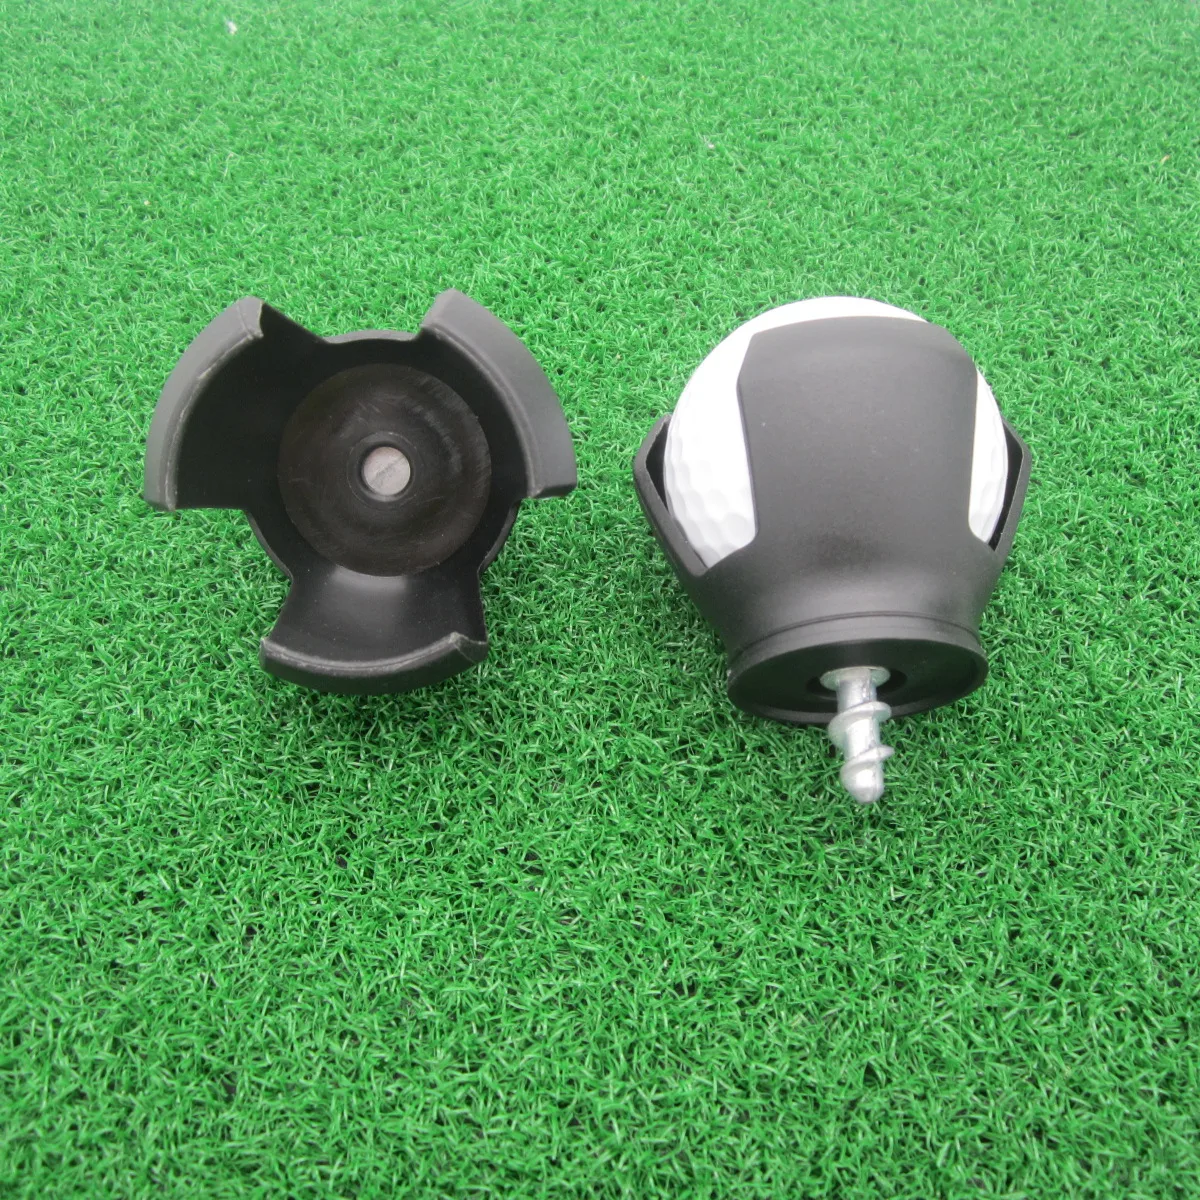 

golf ball picker tool 3-prong Golf Ball Pick Up Retriever Grabber Claw for Putter grip